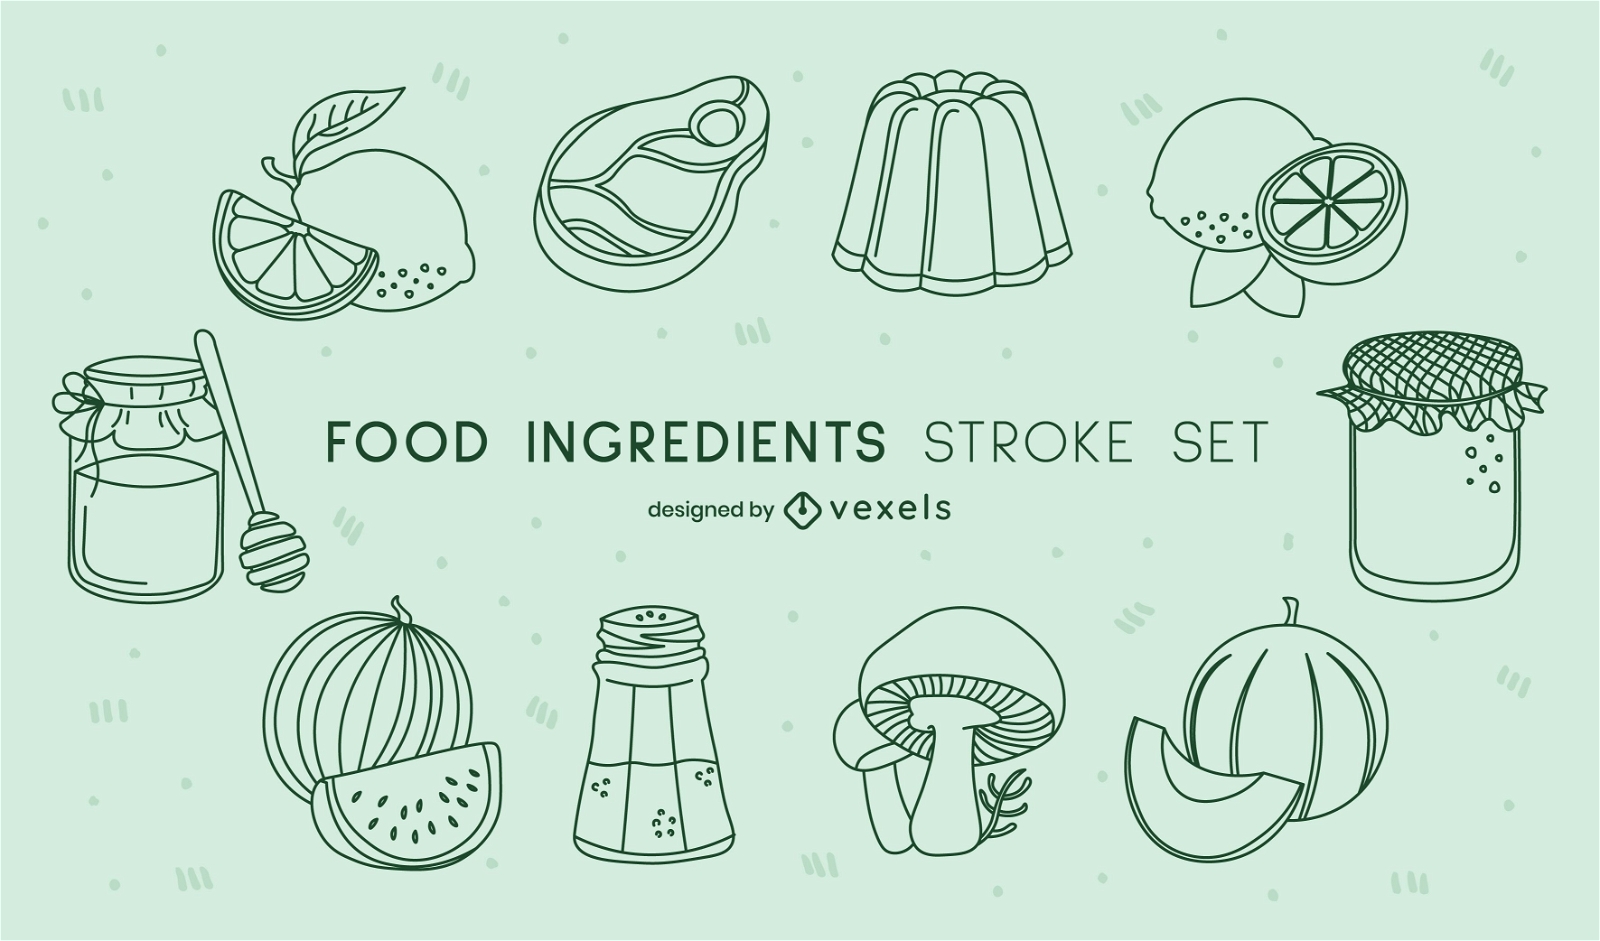 Ingredients cooking food stroke set